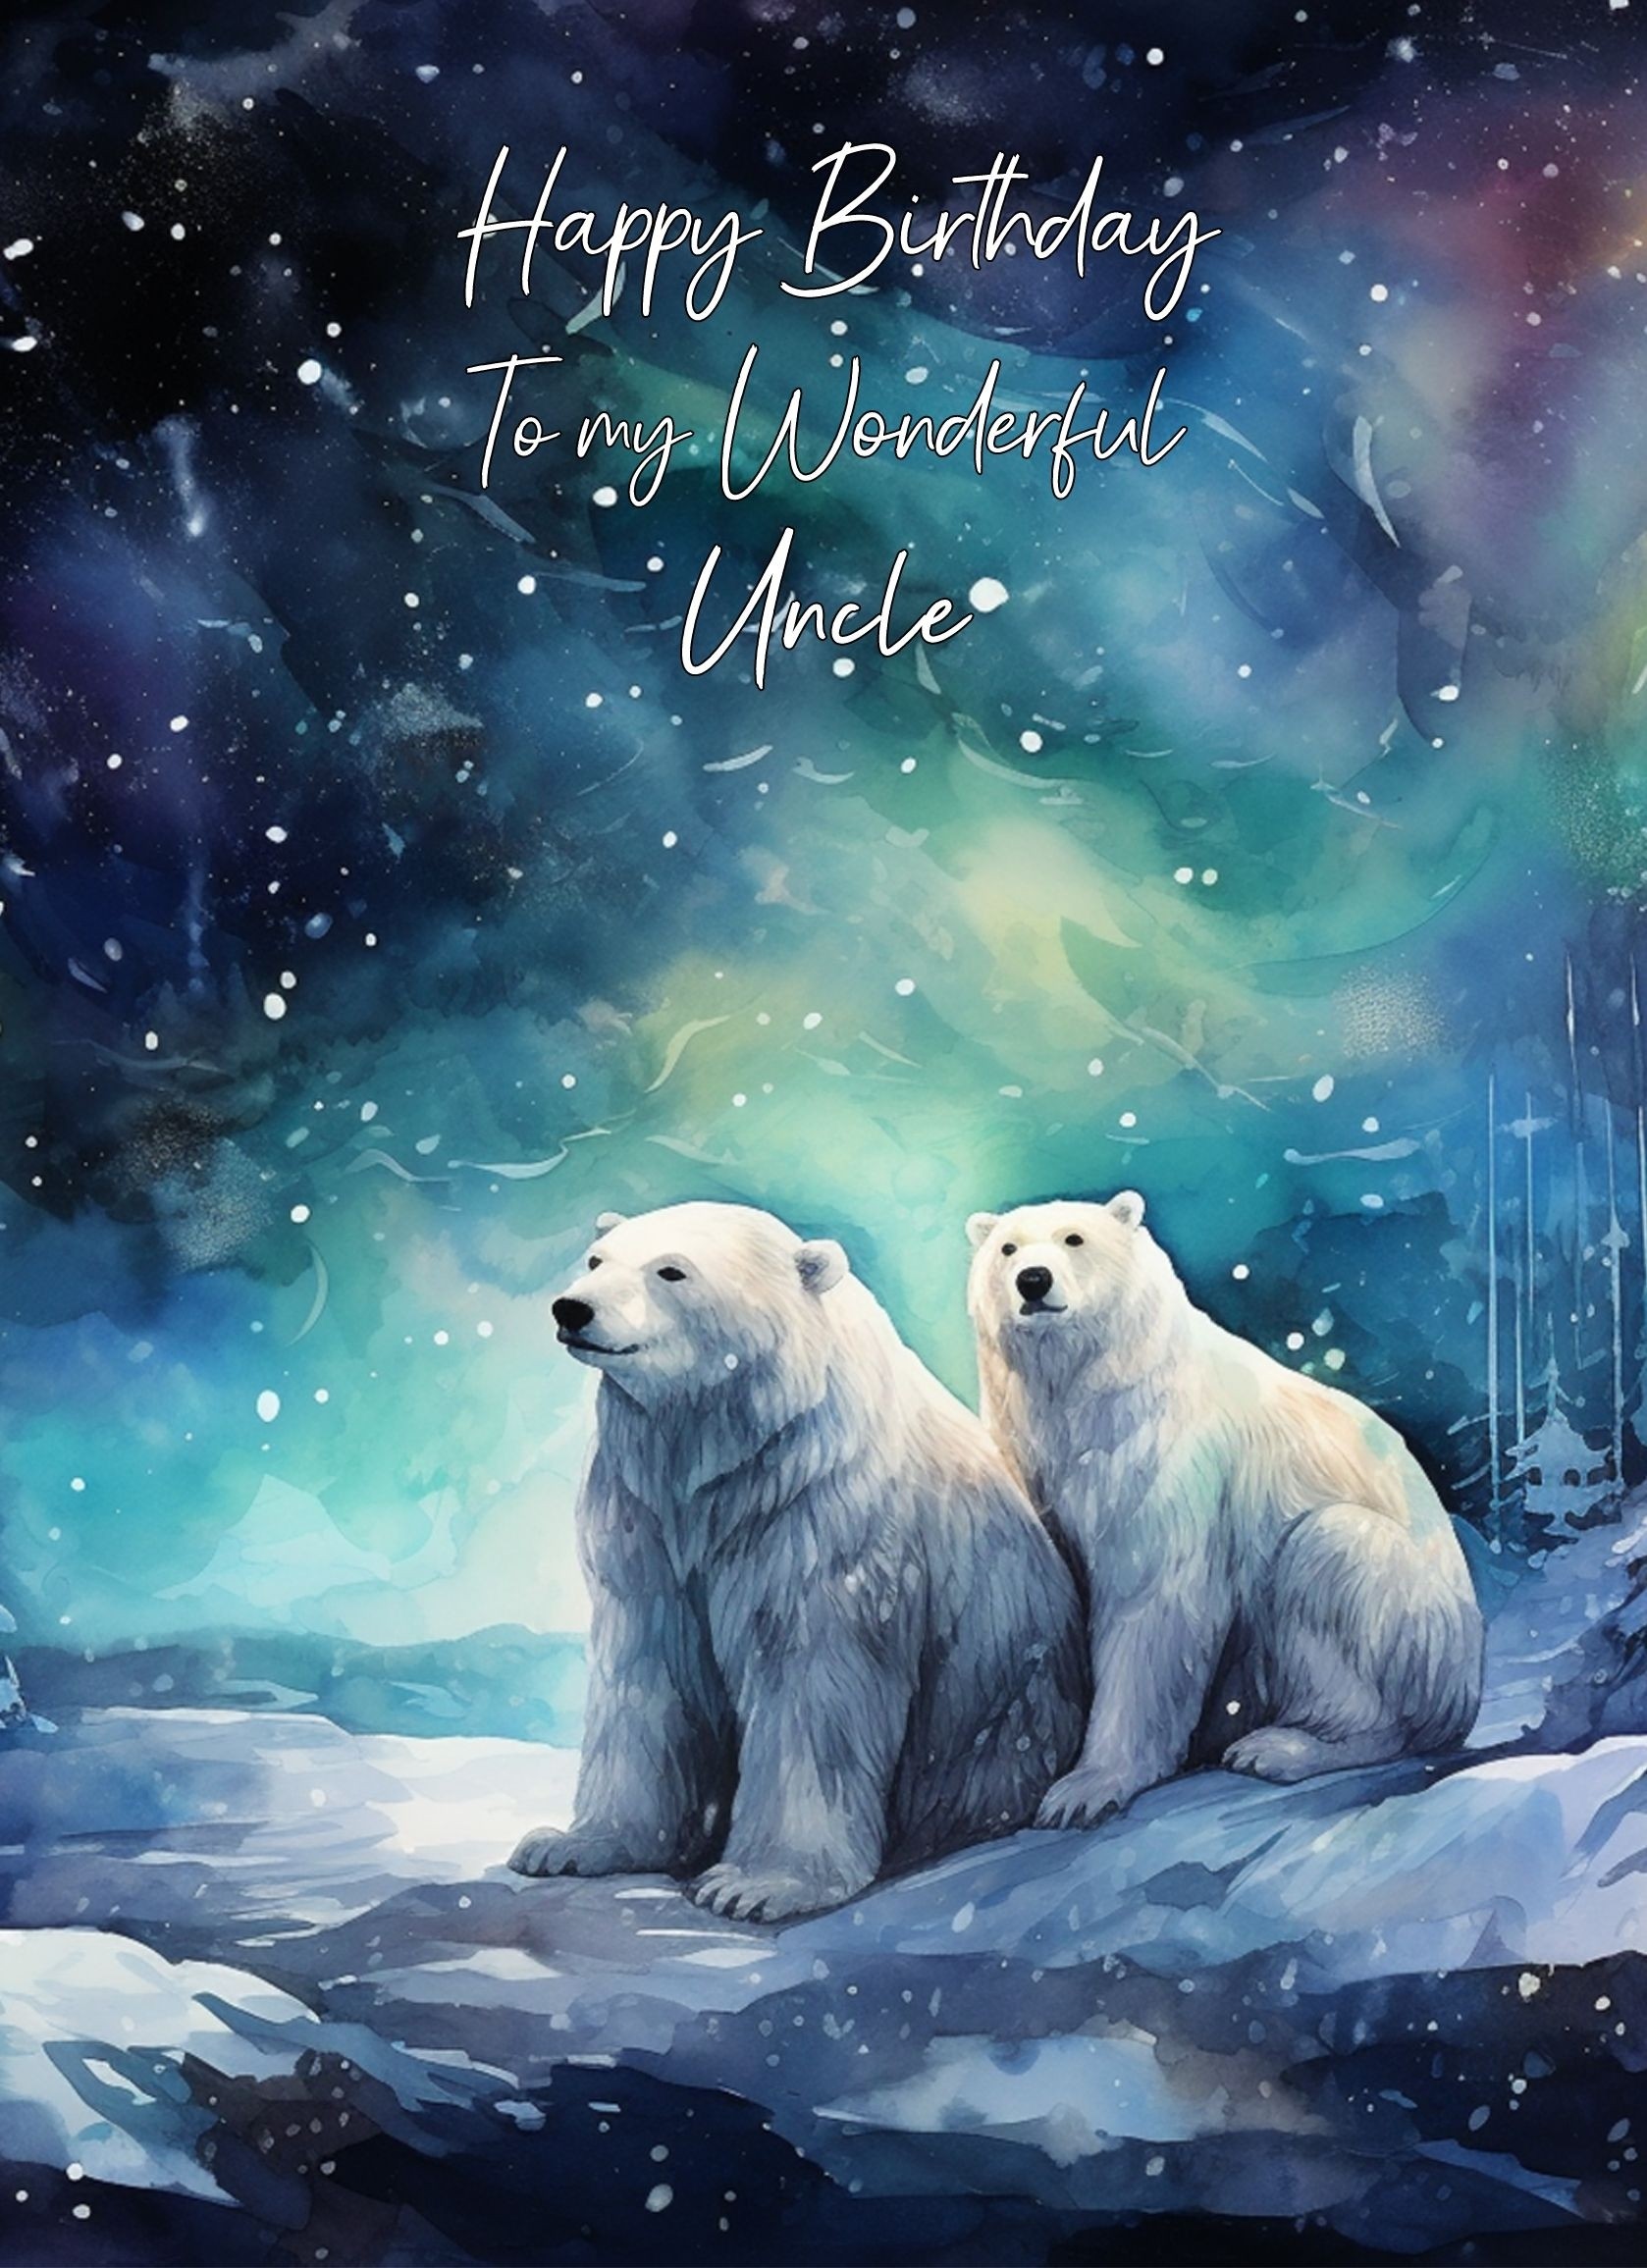 Polar Bear Art Birthday Card For Uncle (Design 5)